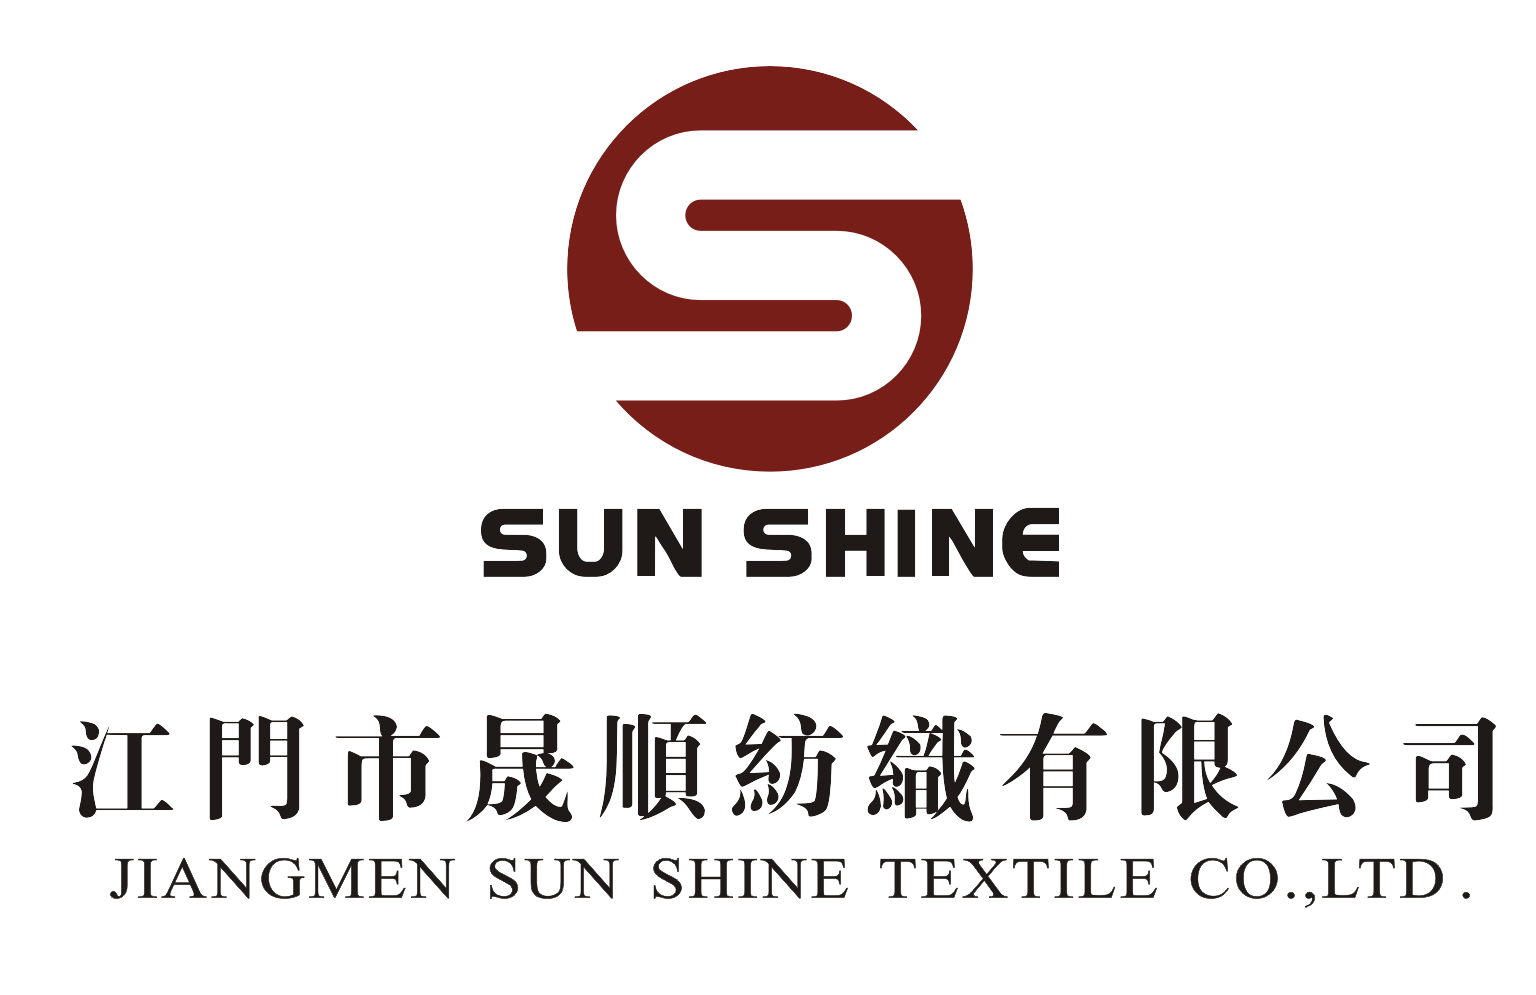 Jiangmen Sun Shine Textile Co., Ltd